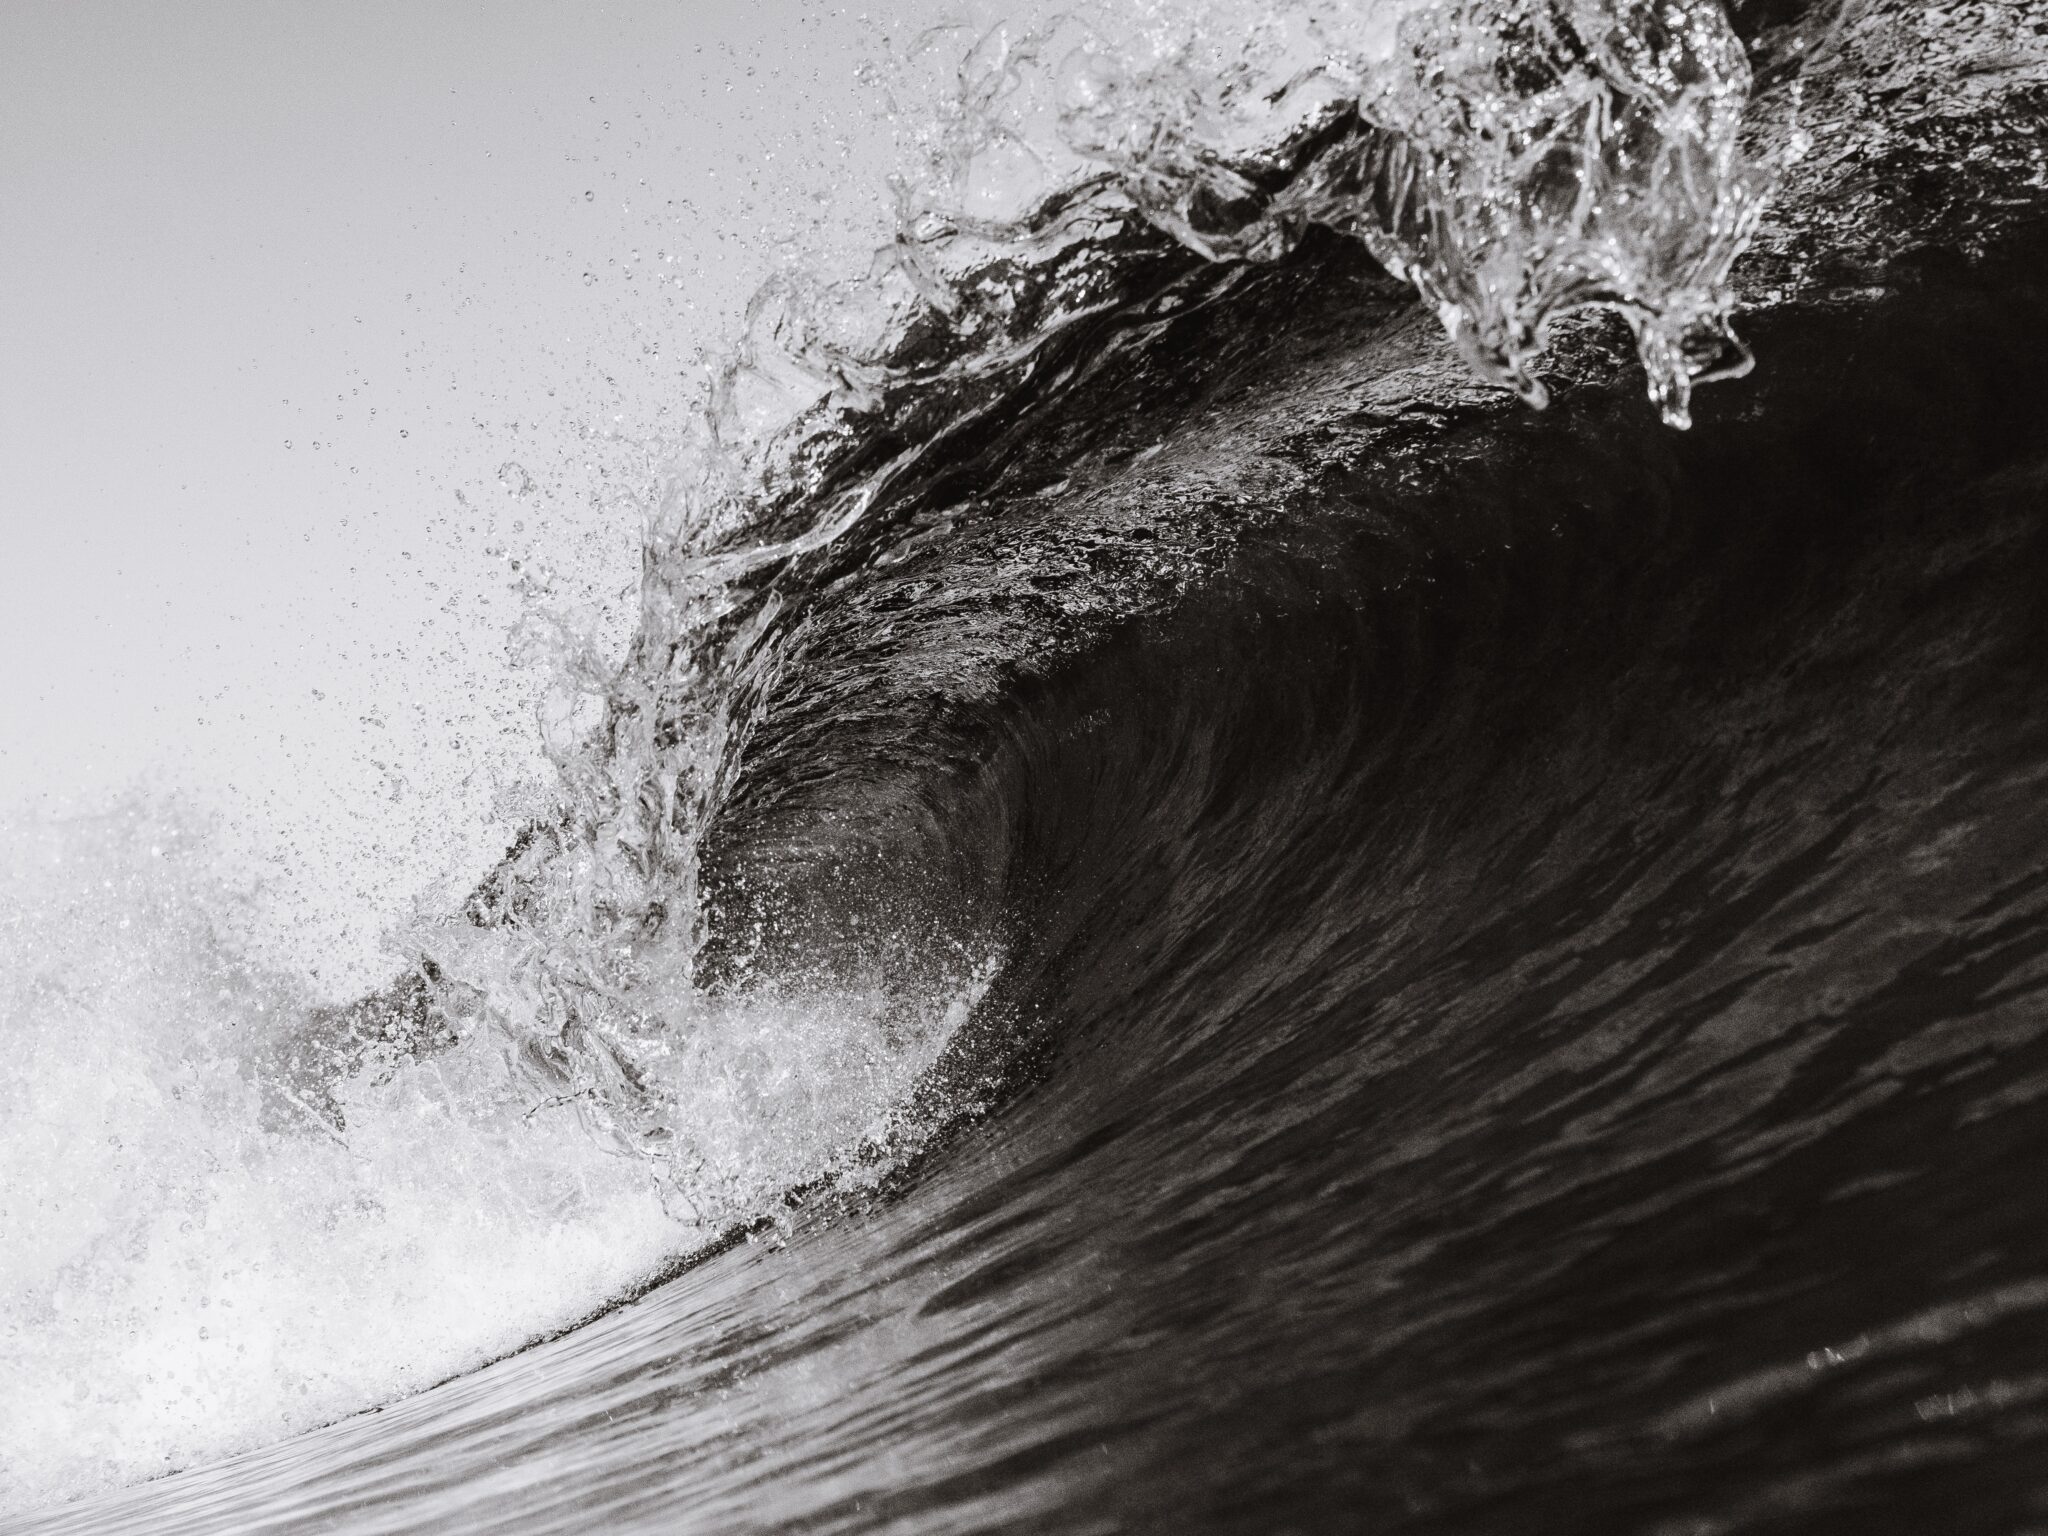 wave in the ocean | Photo by Matt Hardy on Unsplash